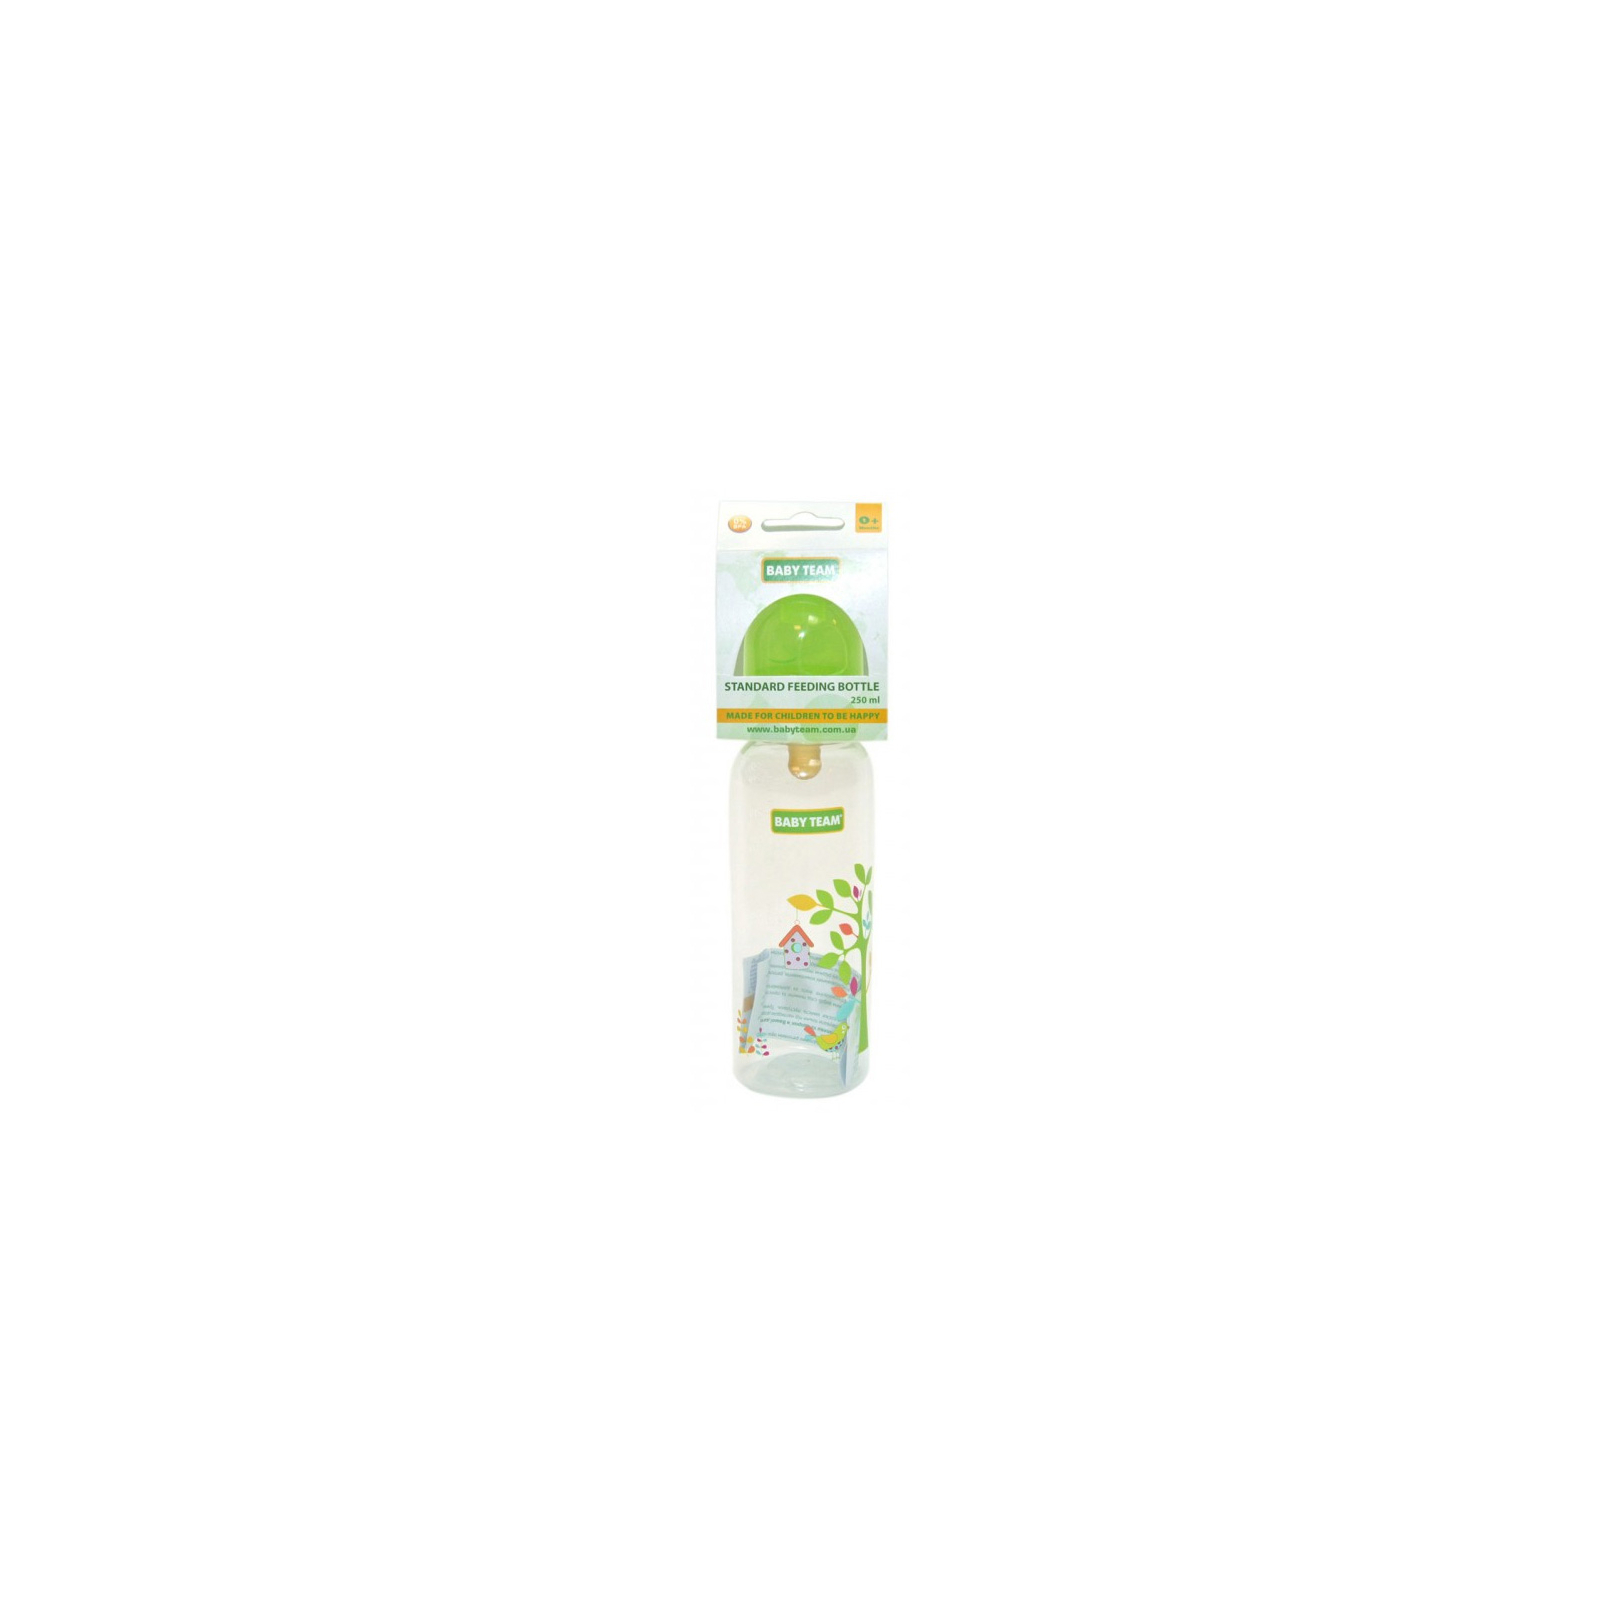 Бутылочка для кормления Baby Team с латексной соской, 250 мл 0+ салат (1310_салатовый)